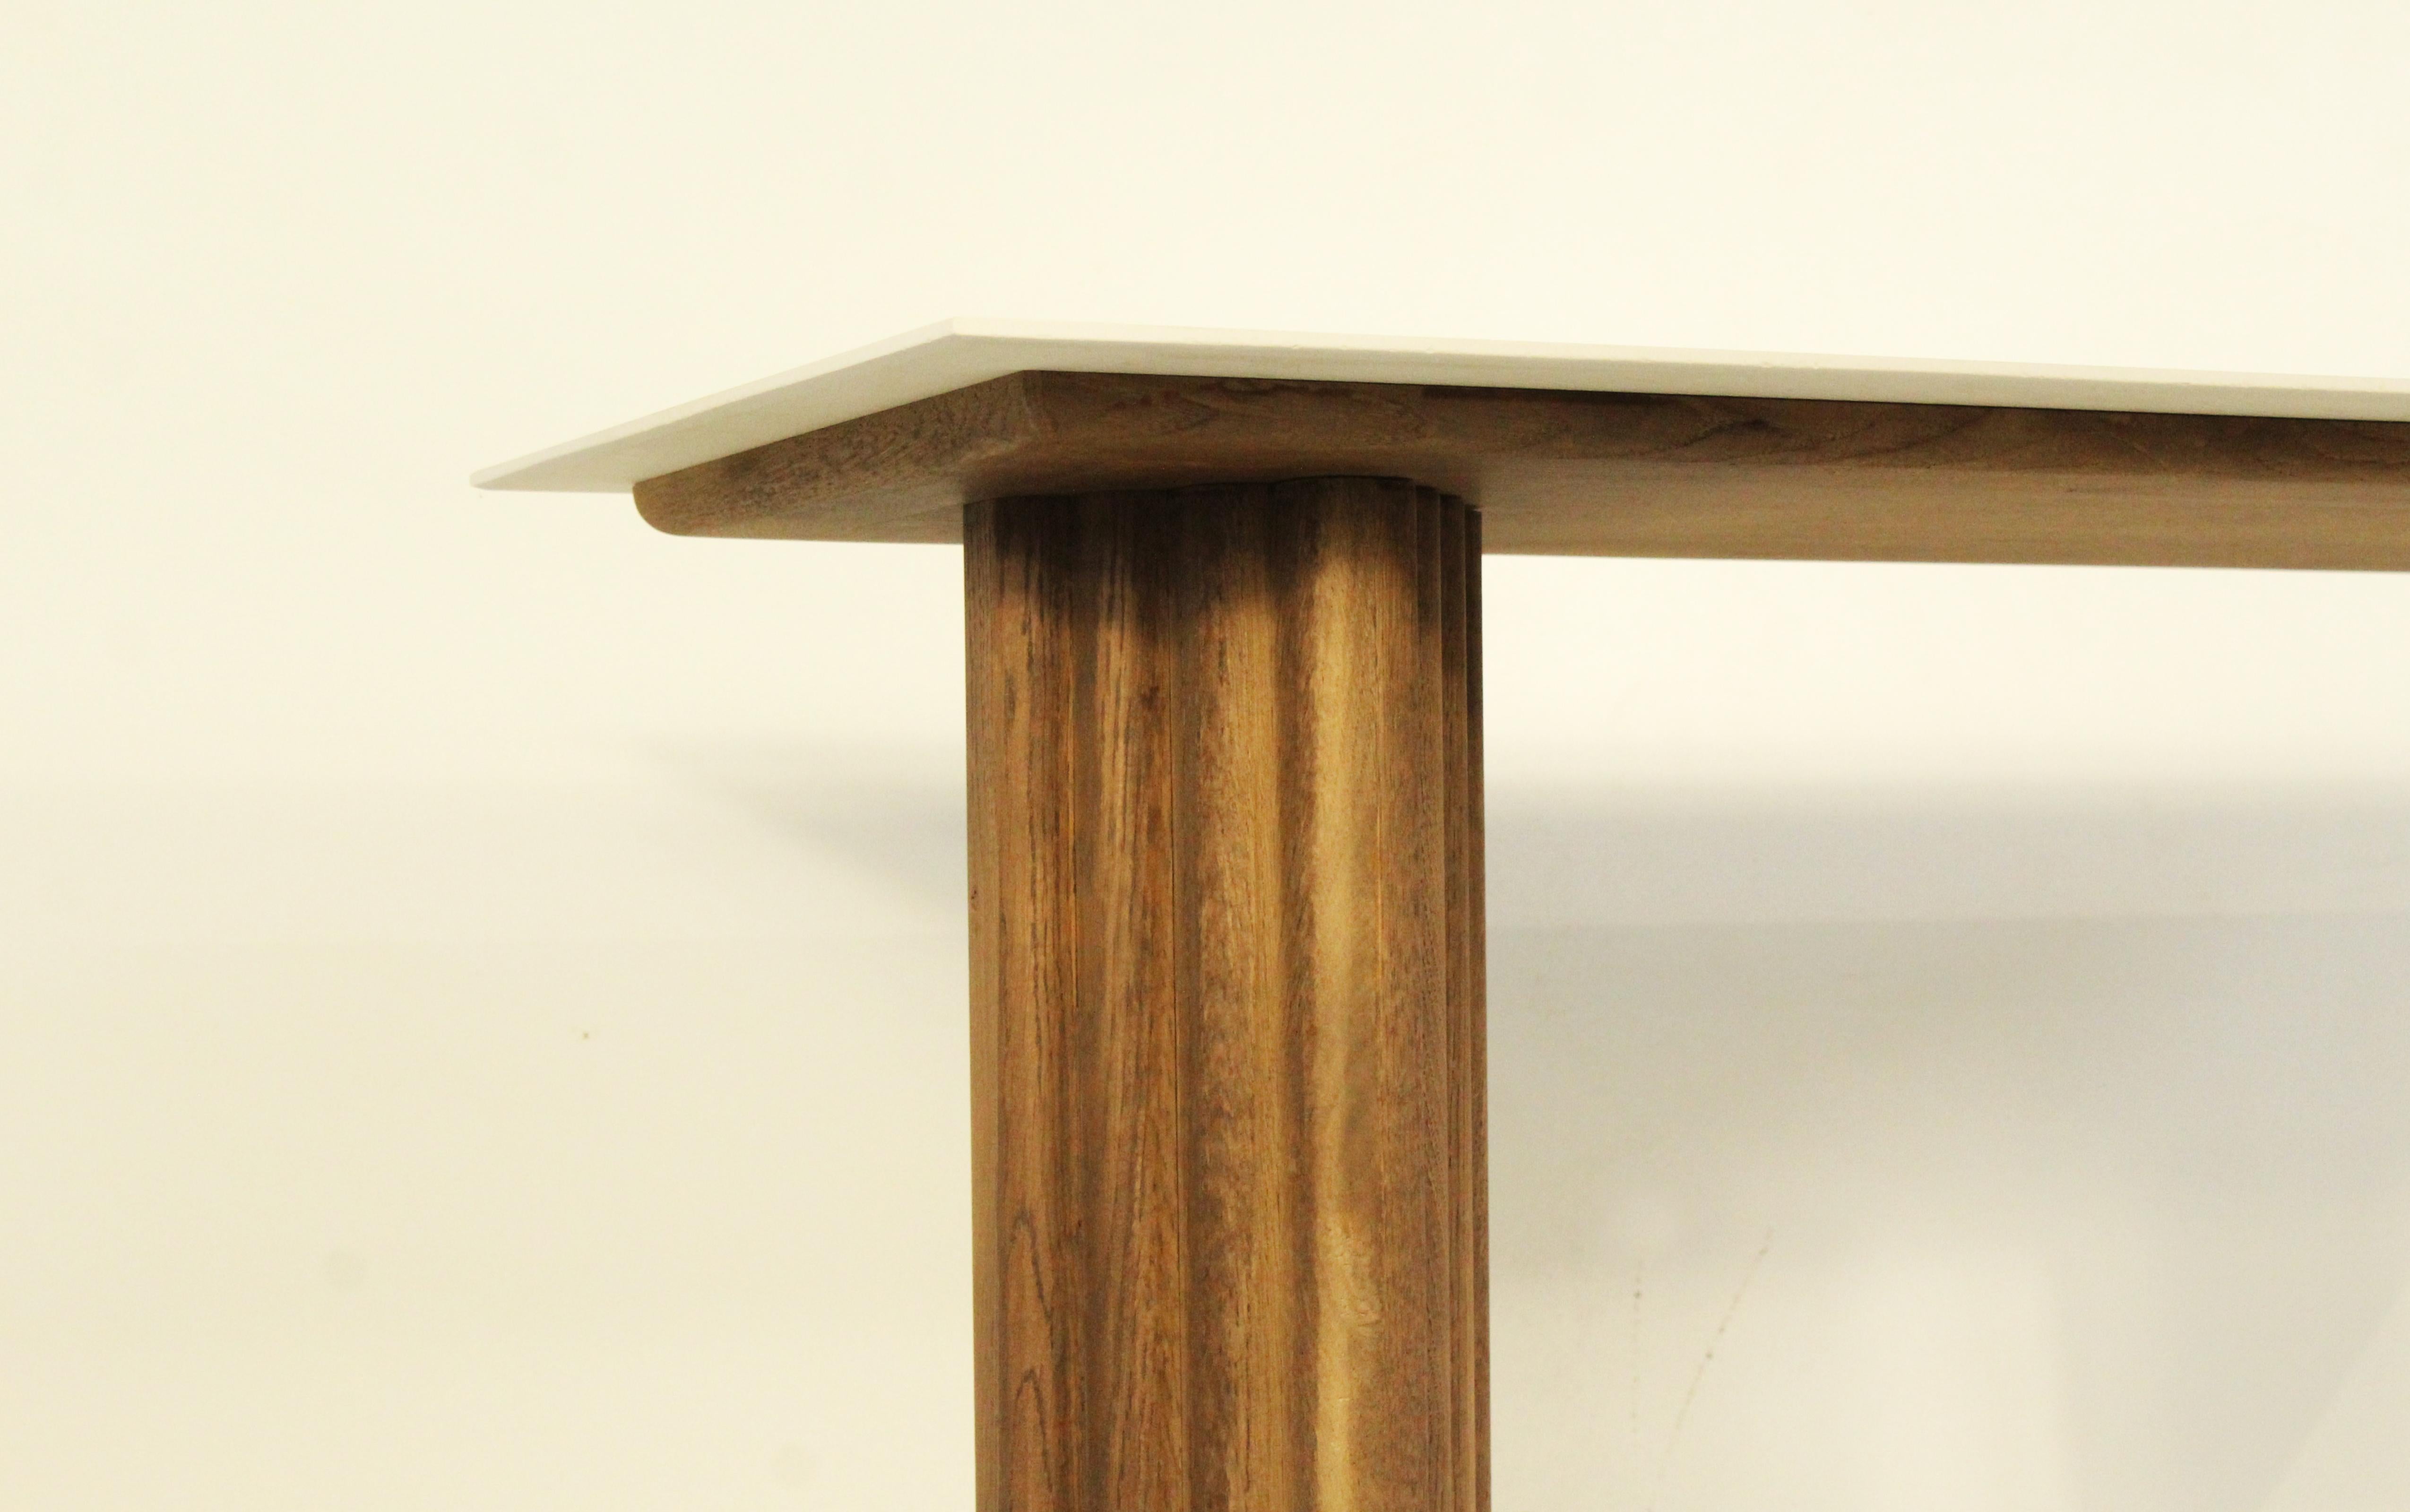 Inspirée du travail des ébénistes, Monolit est une console alliant le chêne et la céramique. Chaque pièce est fabriquée dans nos ateliers
Fabriqué à la main en France
Italgraniti céramique